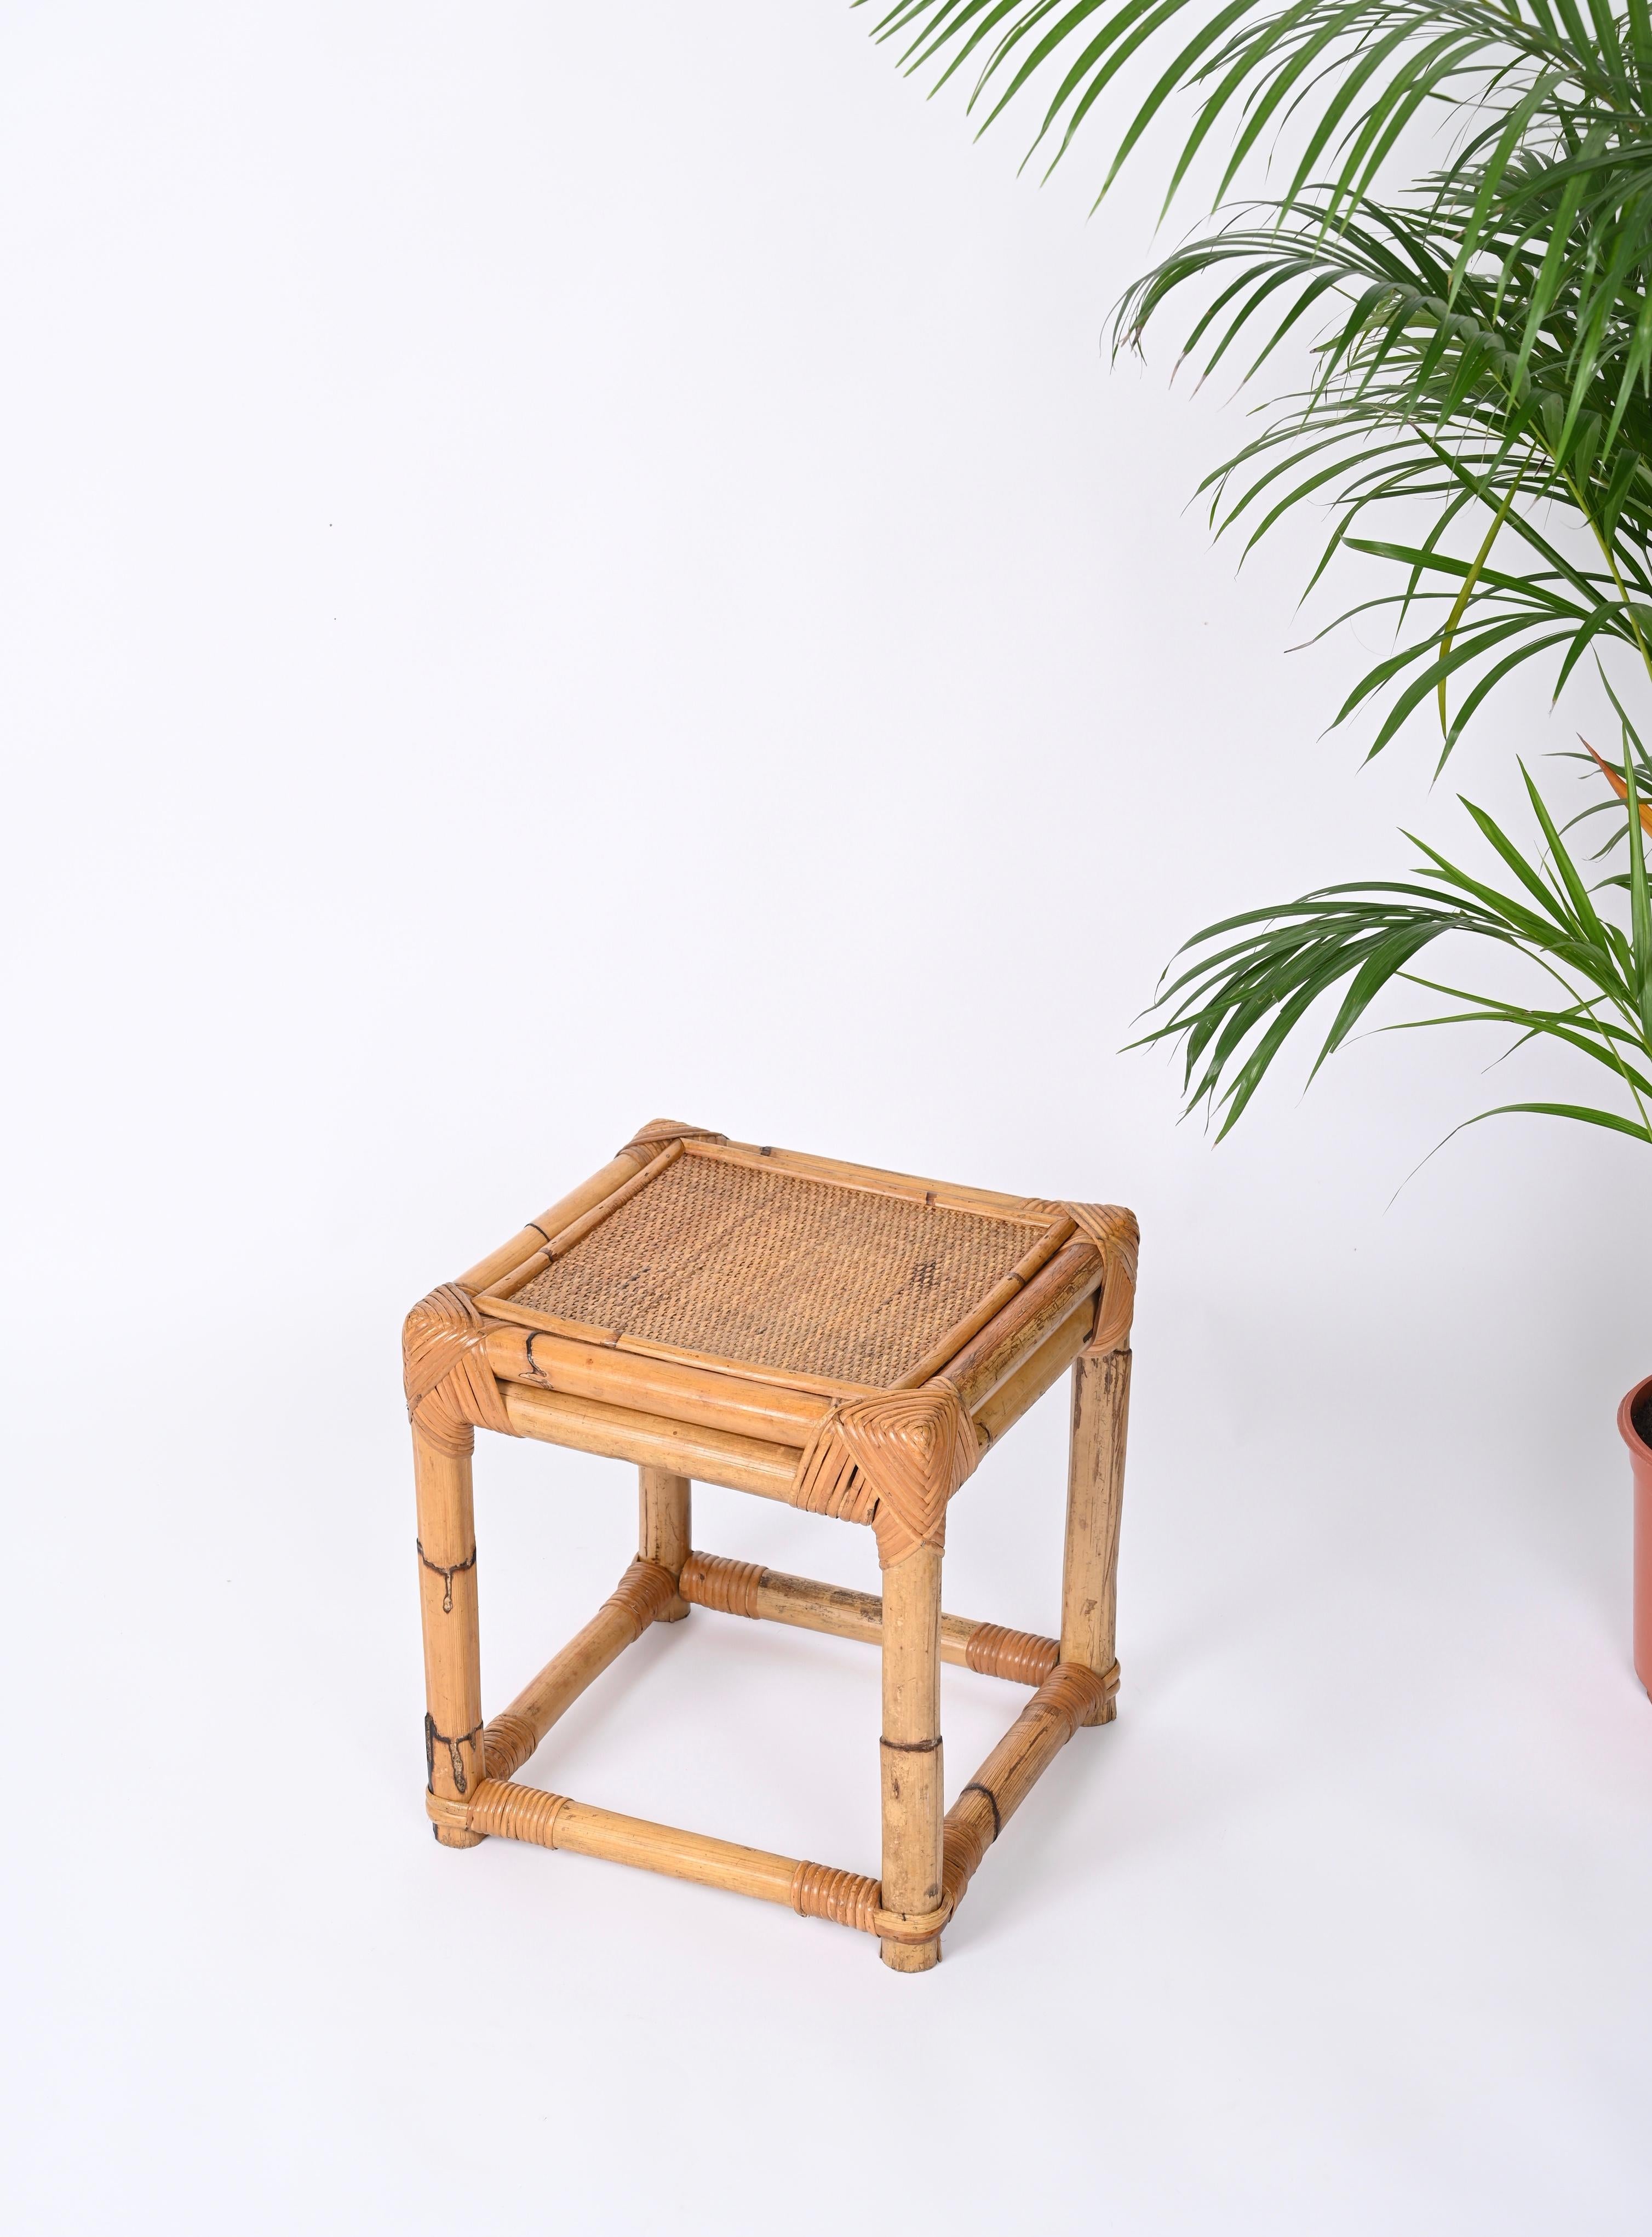 Hübscher kleiner Beistelltisch oder Hocker aus Bambus und Rattan, hergestellt in Italien in den 70er Jahren.  

Diese robuste Ottomane hat eine würfelförmige Struktur, die vollständig aus Bambusrohren gefertigt ist. Die Oberseite besteht aus einem